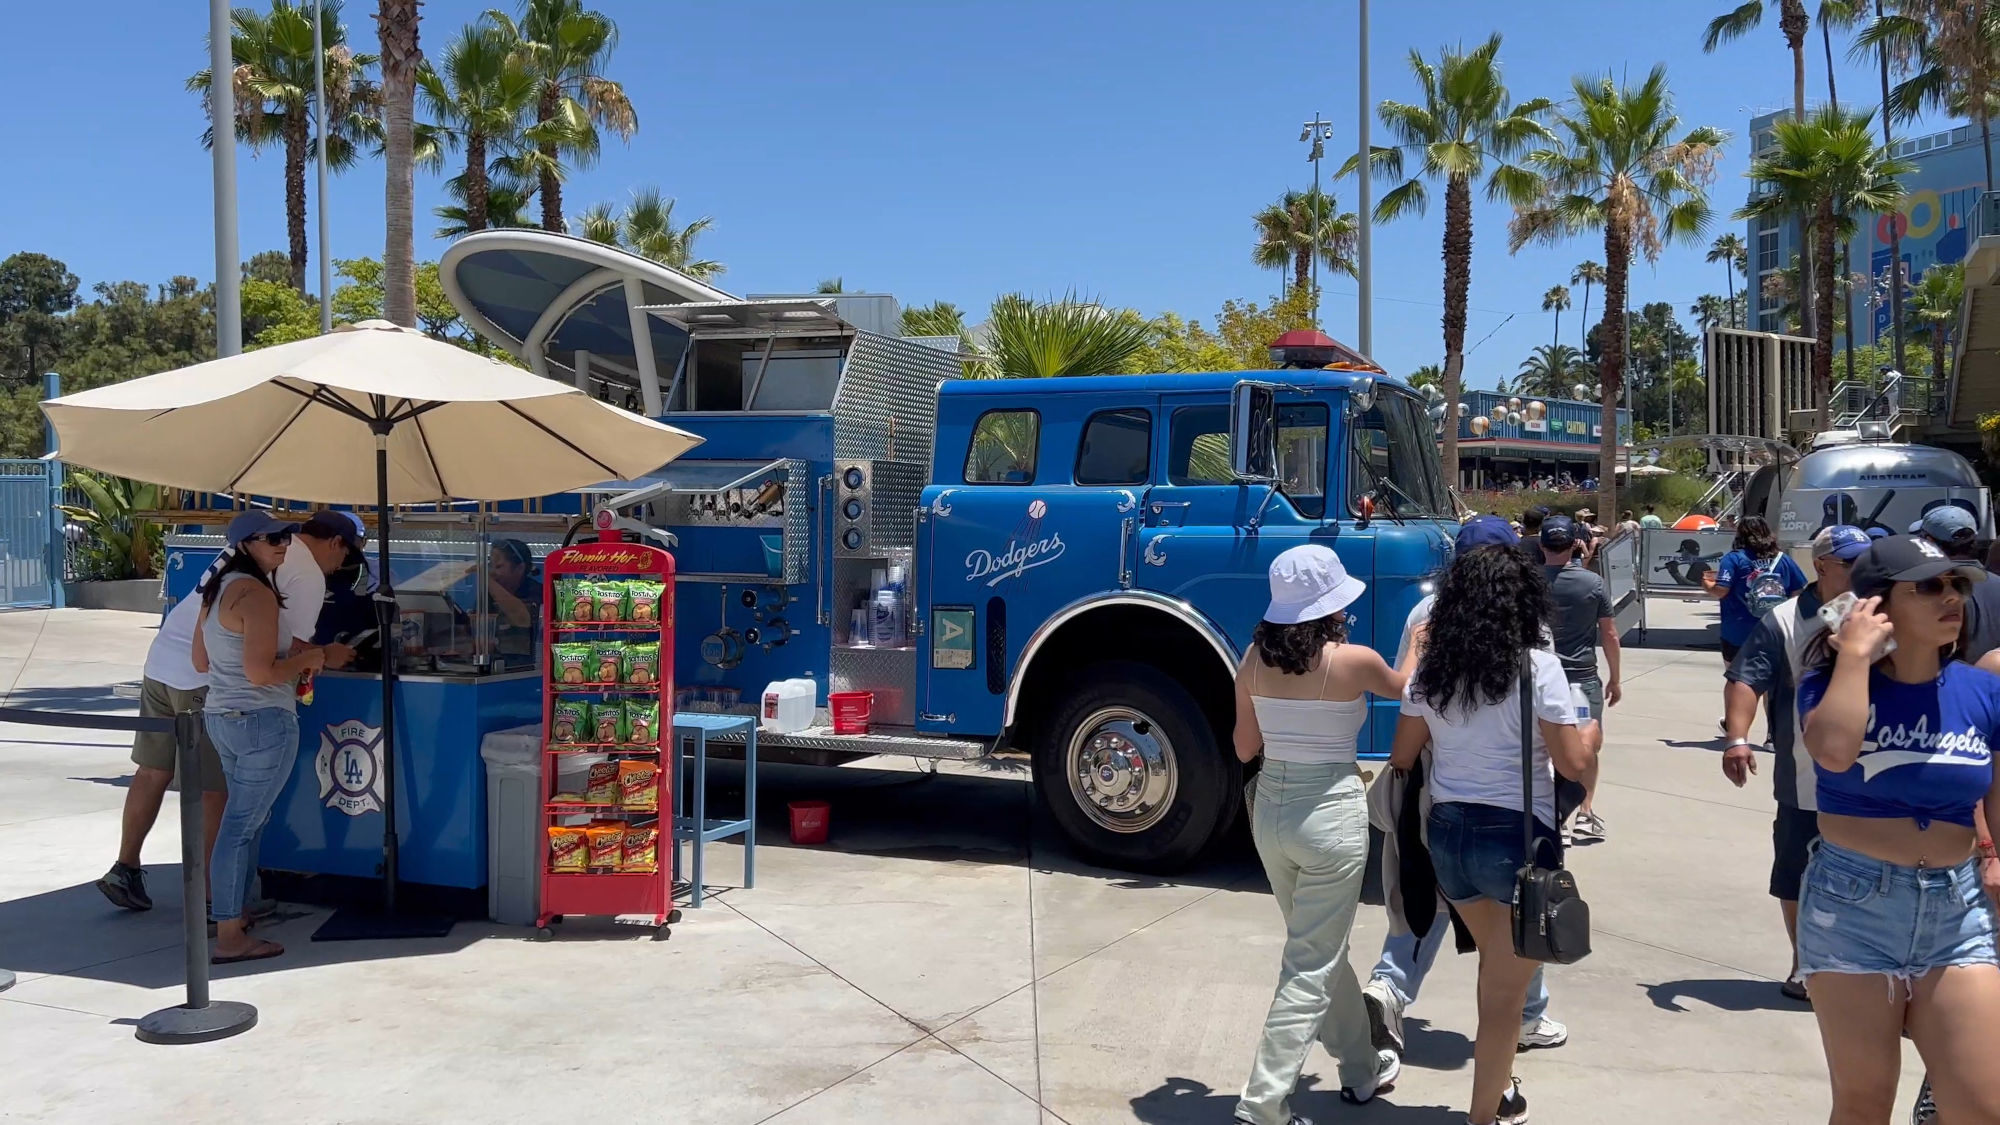 Dodgers Blue Fire Truck